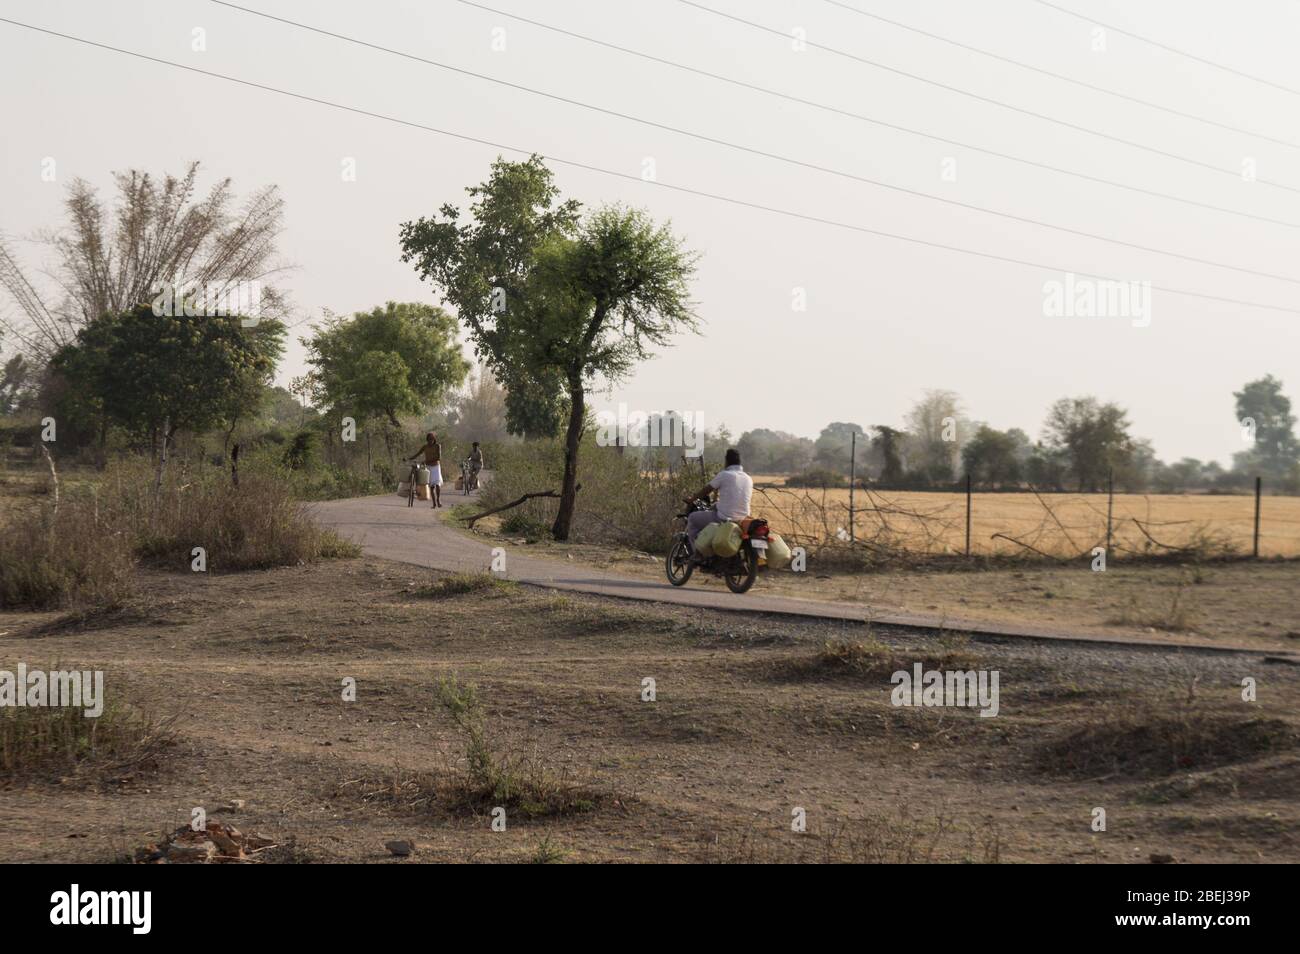 Les villageois indiens vont collecter de l'eau près par étang, mais il y a une différence entre ces deux qui est un qui ont la moto qu'il est plus Banque D'Images